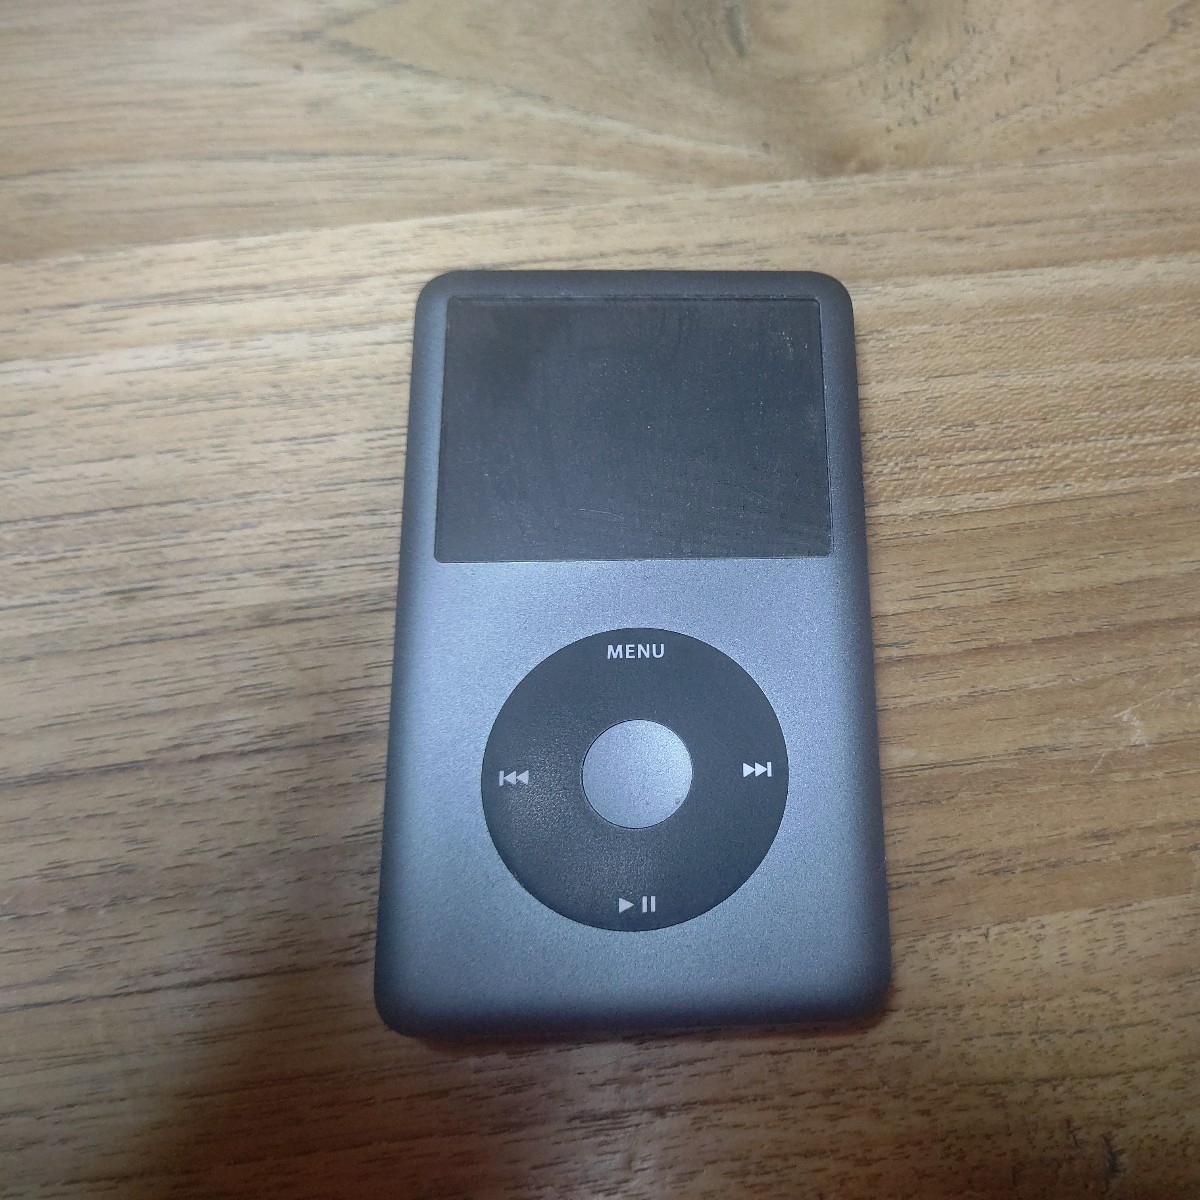 その他 その他 Apple iPod classic MC297J/A ブラック (160GB) オークション比較 